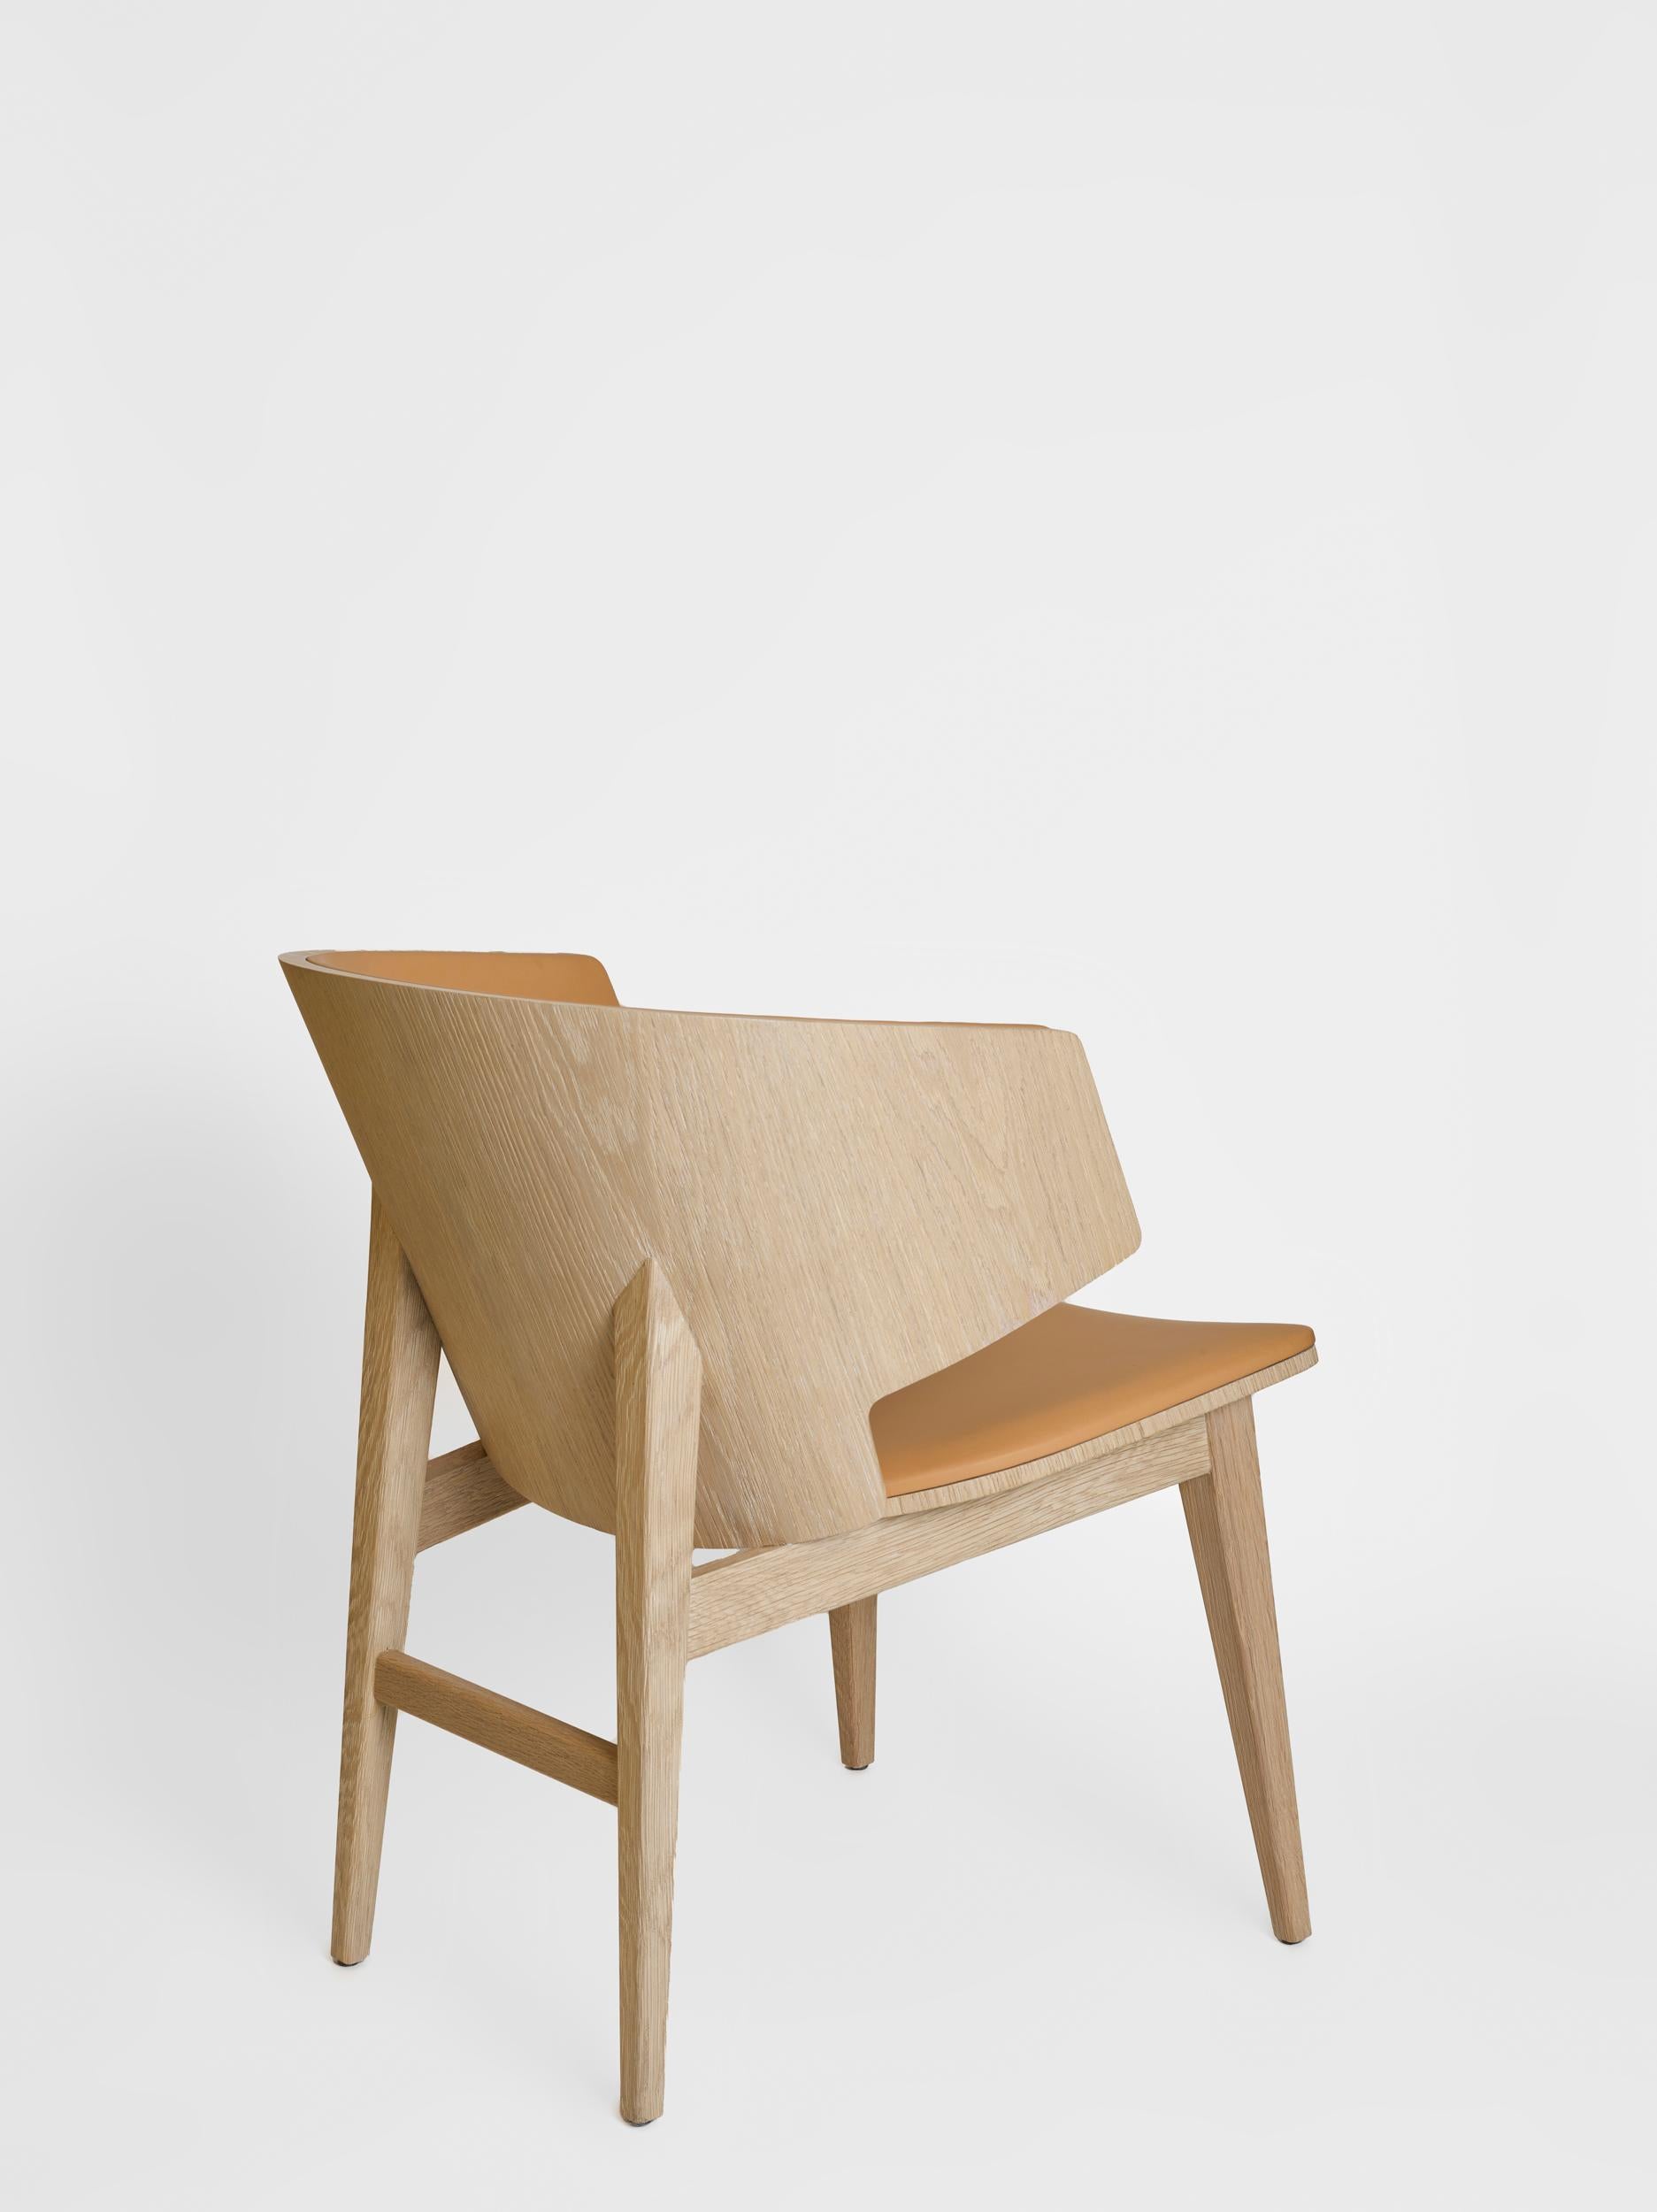 Sarr ist ein gemütlicher Sessel, der mit seinem Korpus aus massivem Nussbaum/Eiche und seiner Kaschmir/Leder-Polsterung ein Maximum an Komfort bietet.
Esszimmerstuhl, Bürostuhl. Bequemer Esszimmerstuhl